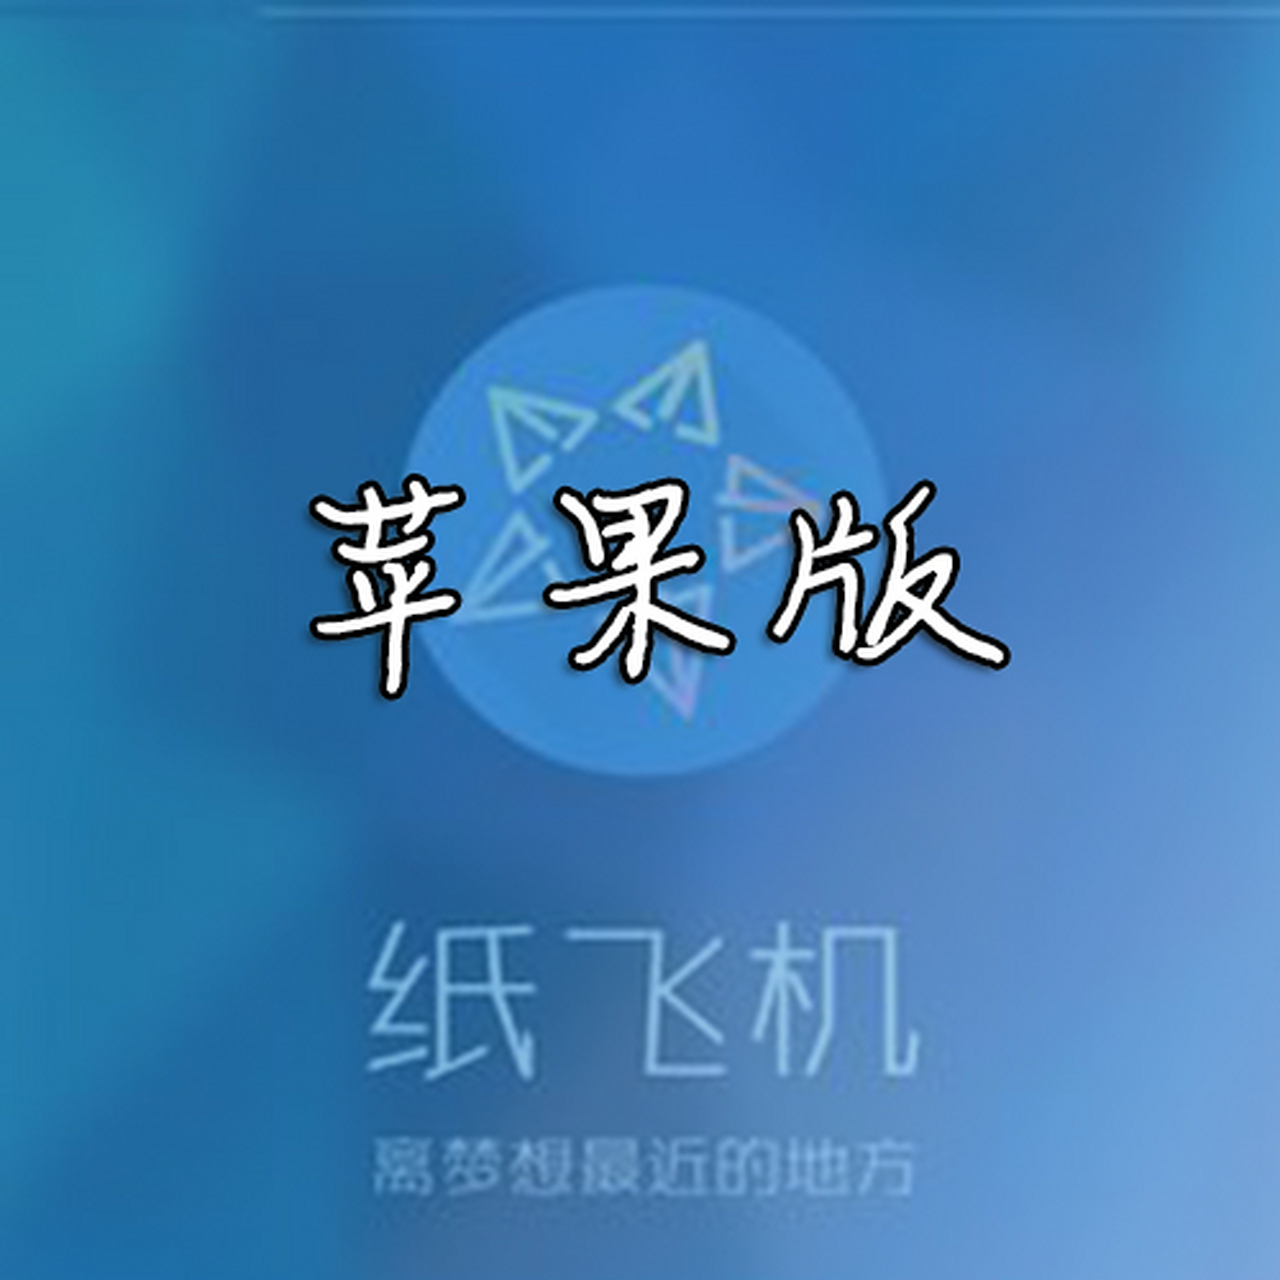 纸飞机中文安装包代码、纸飞机安装zh_cn语言包